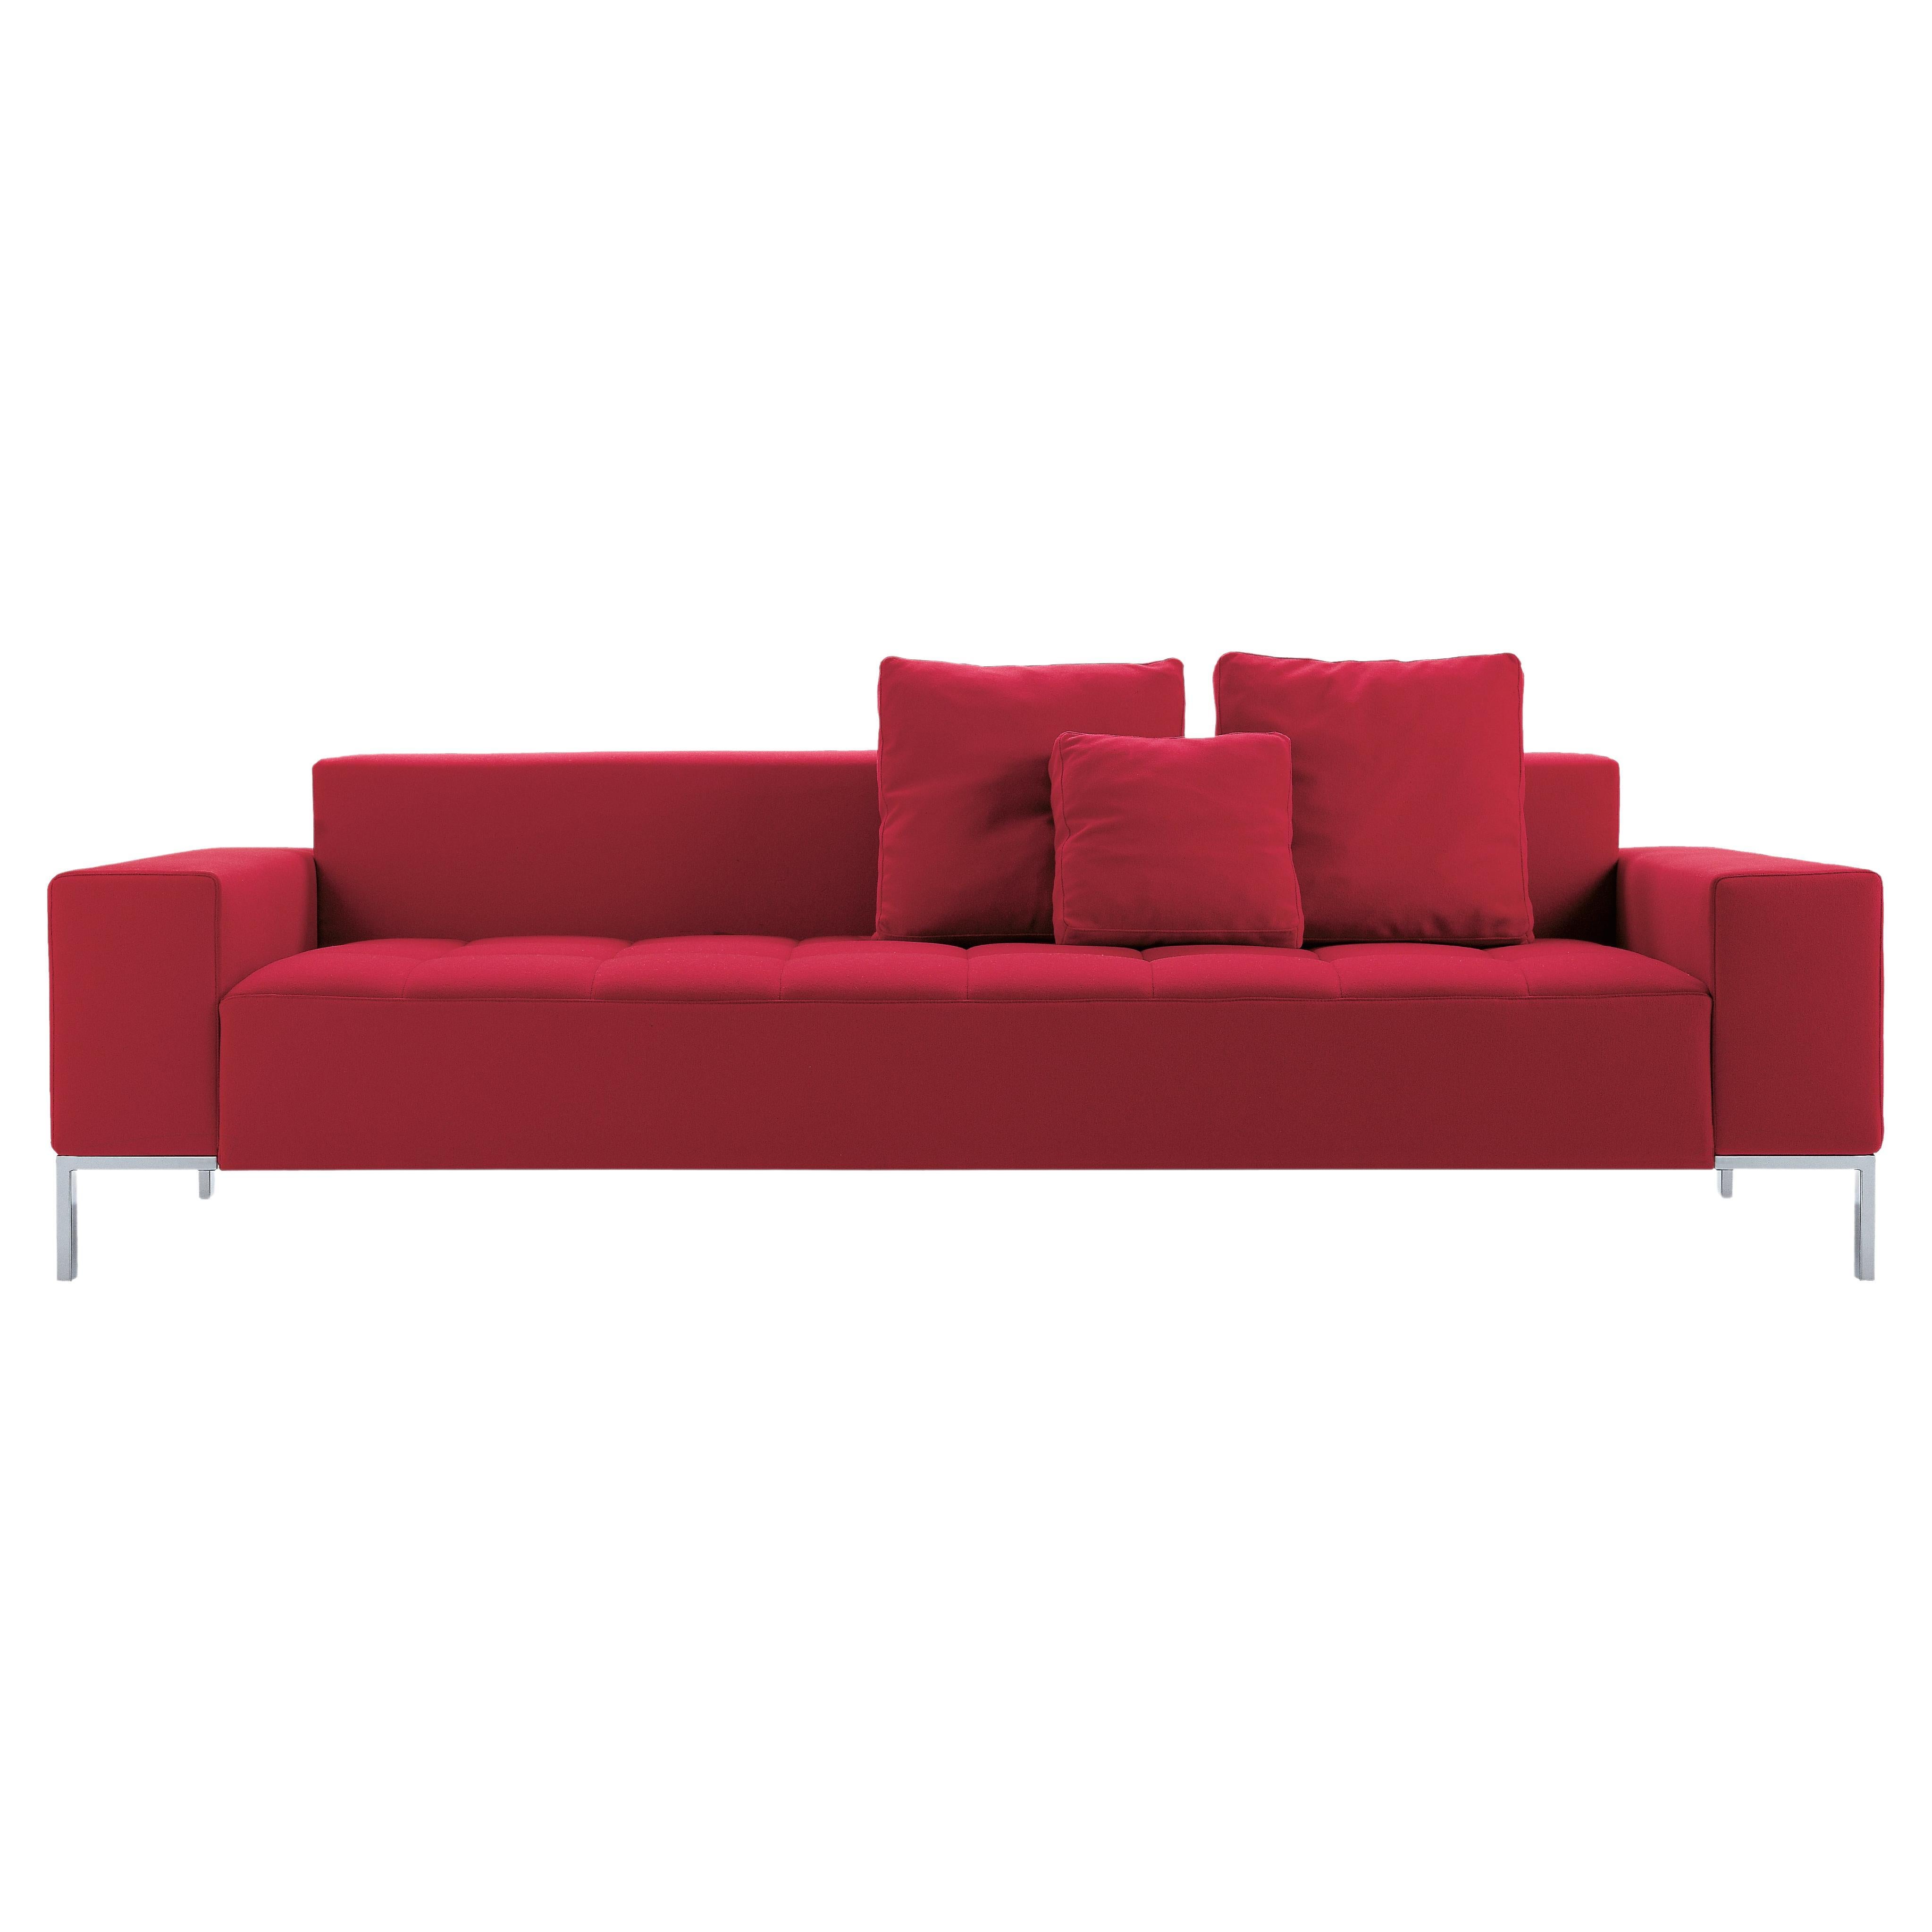 Zanotta Alfa Monobloc Sofa in Teolo Red Fabric by Emaf Progetti For Sale